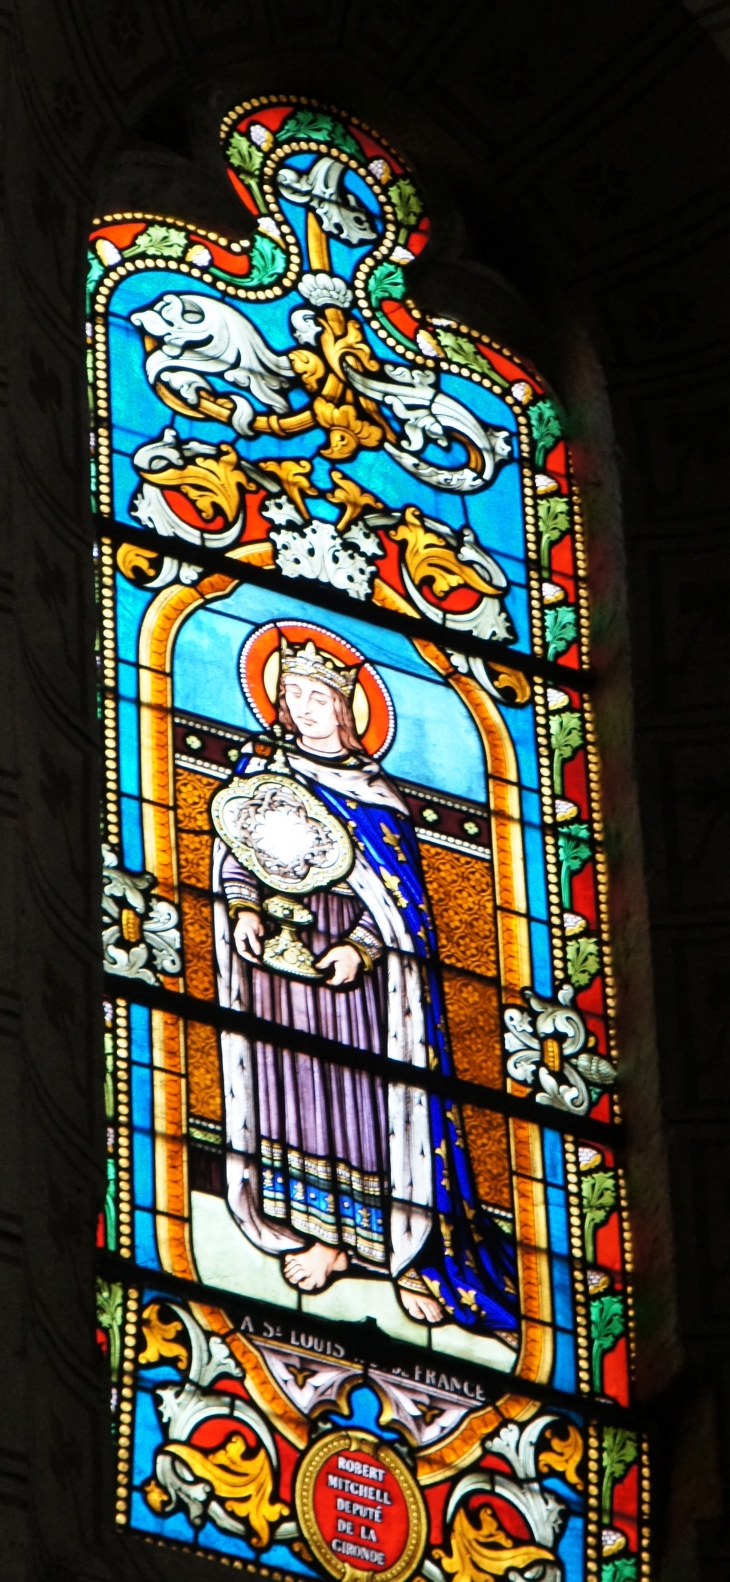 A St Louis Roi de France, vitrail de l'église Notre Dame. - Monségur